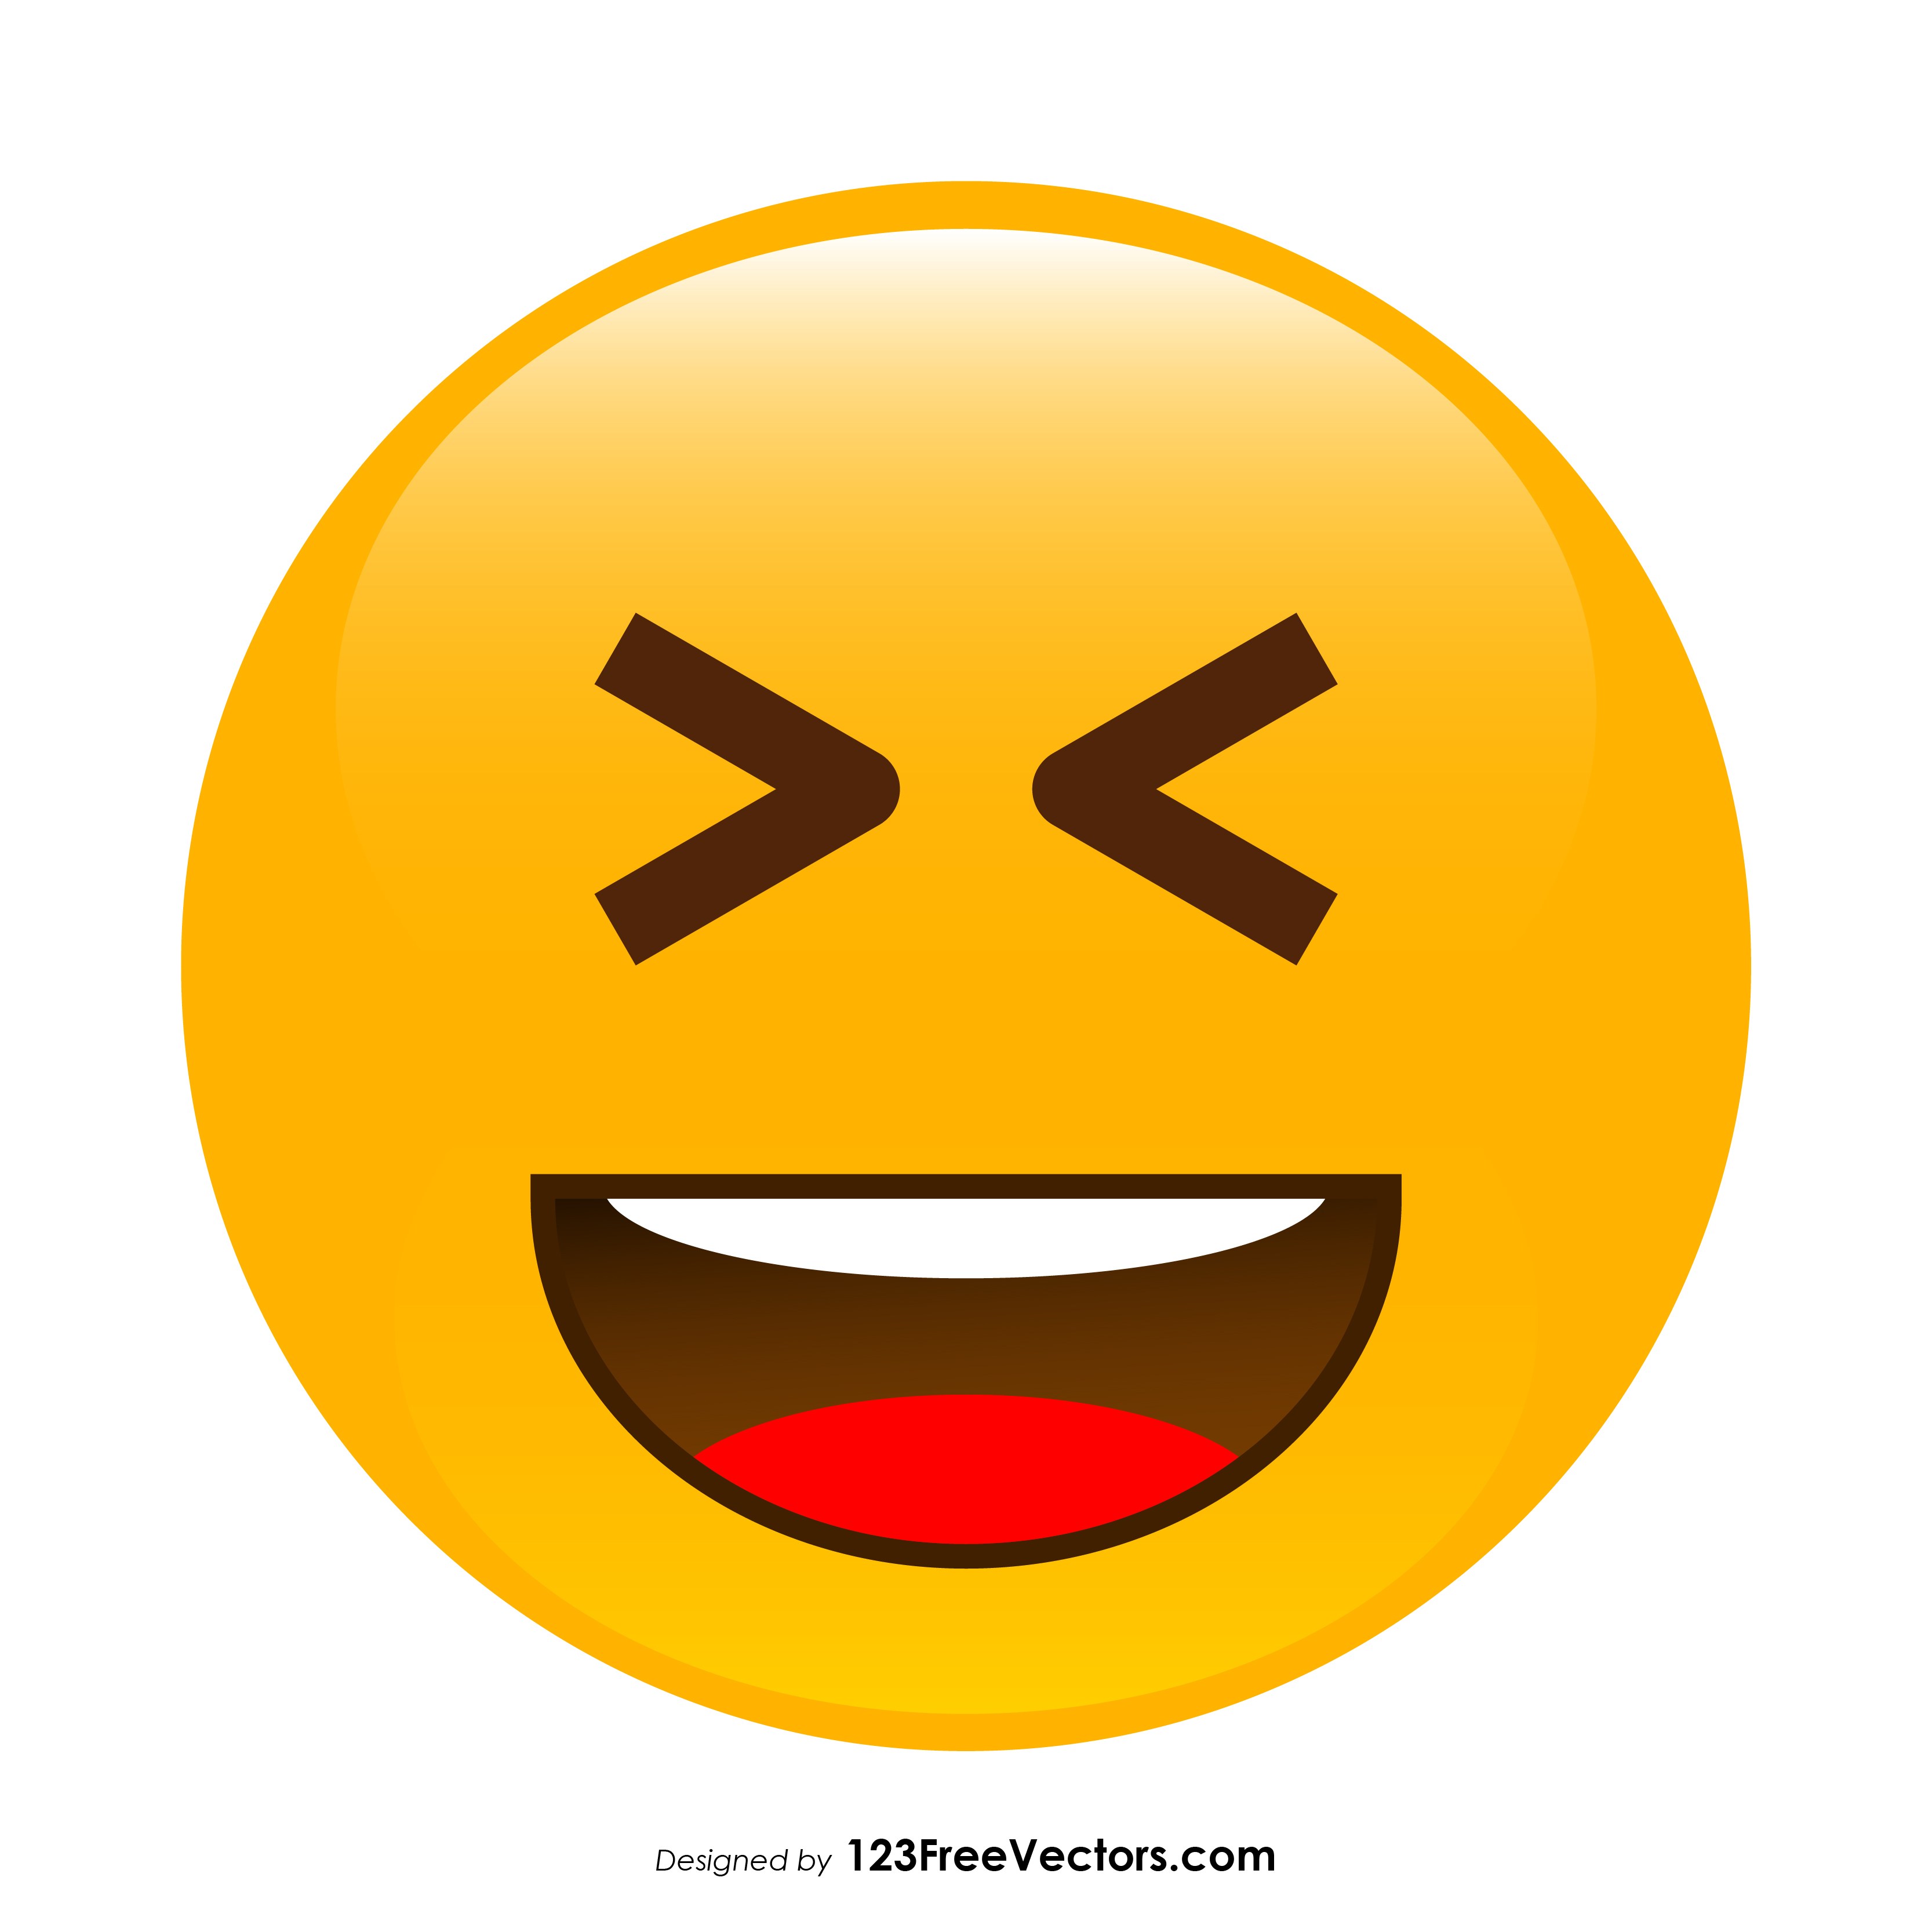 Smiley Emoji Vector at Vectorified.com | Collection of Smiley Emoji ...